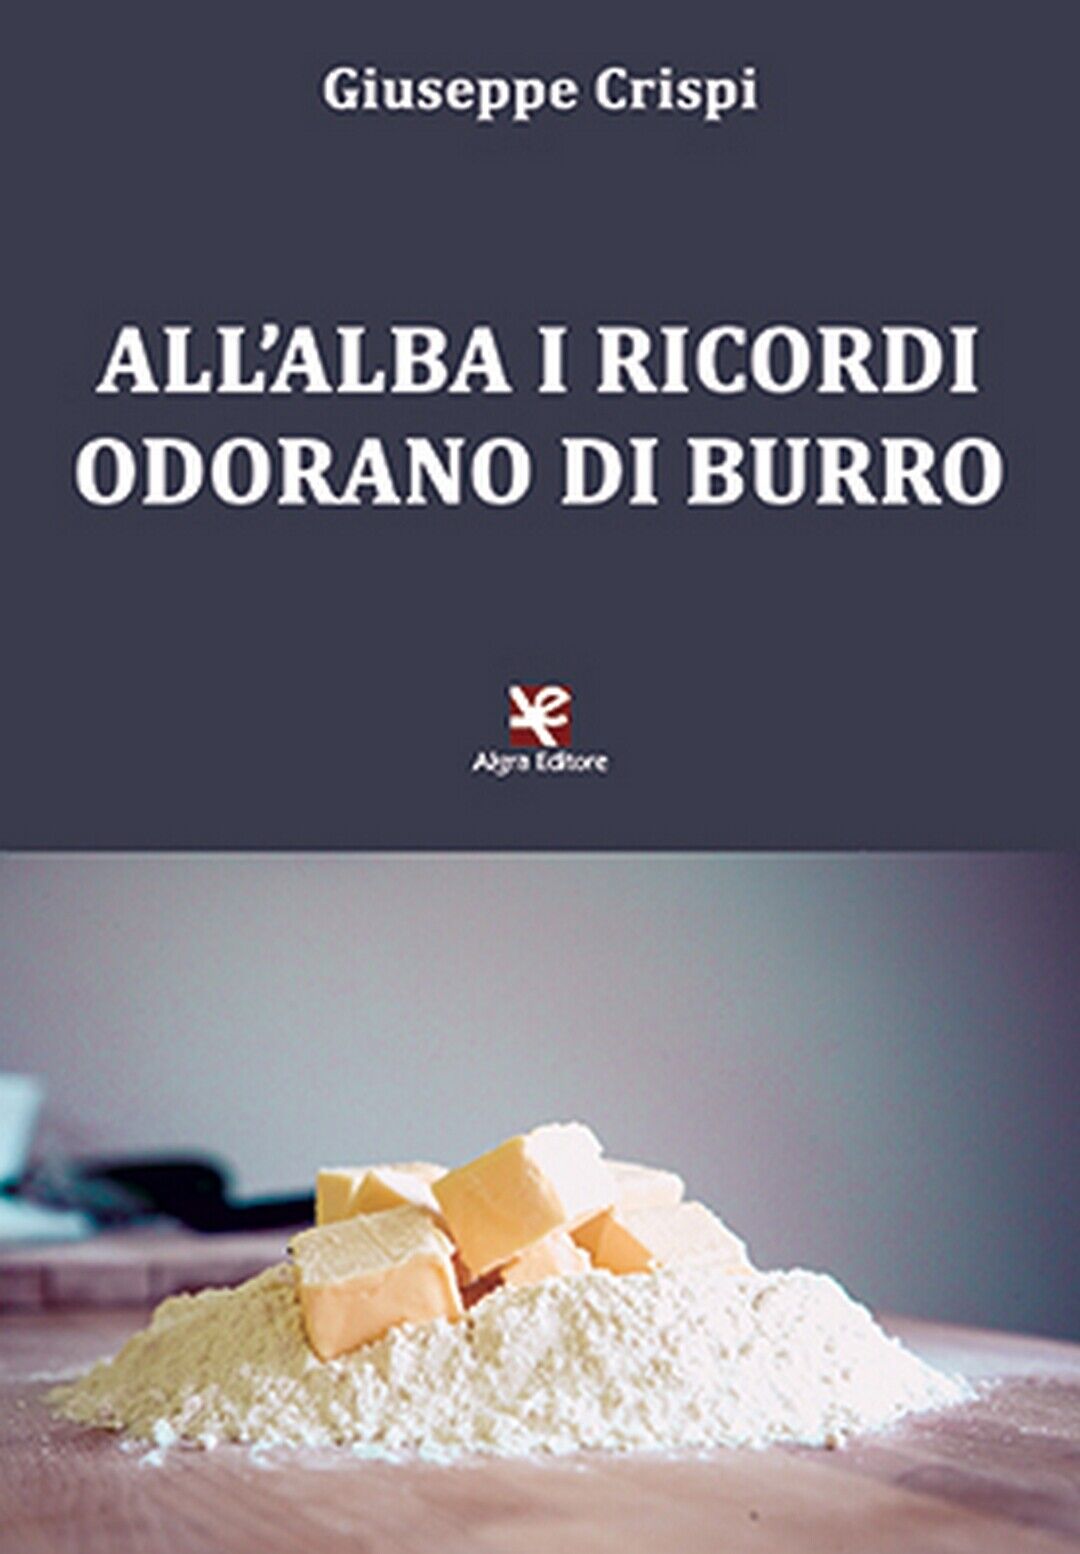 AlL'alba i ricordi odorano di burro  di Giuseppe Crispi,  2020,  Algra Editore